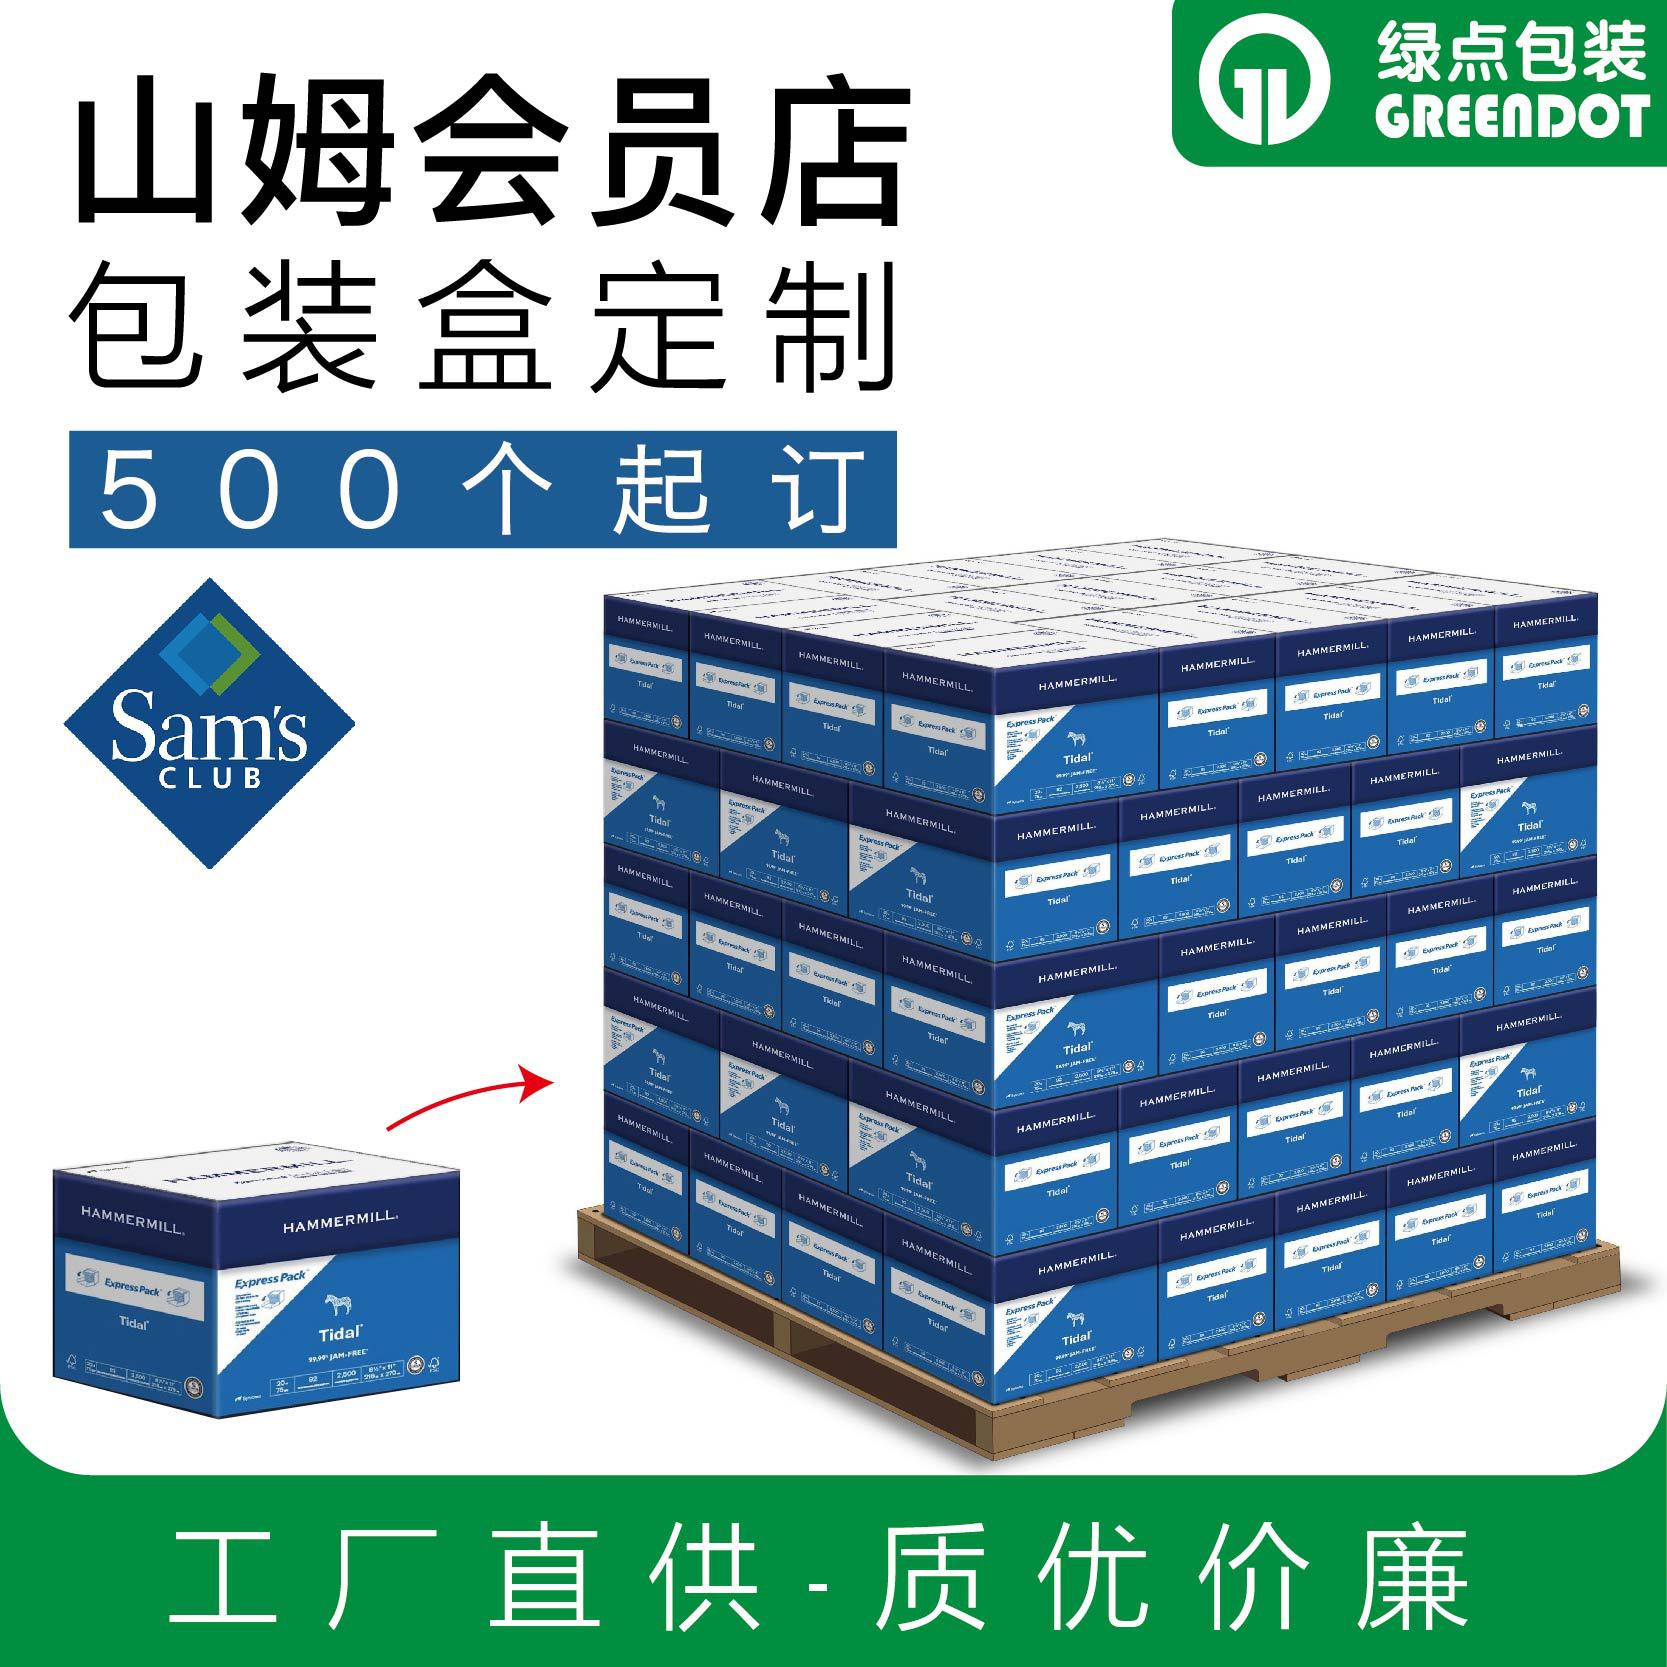 产品包装盒定制厨具用品彩盒定做商超卖场托盘包装定做印刷工厂